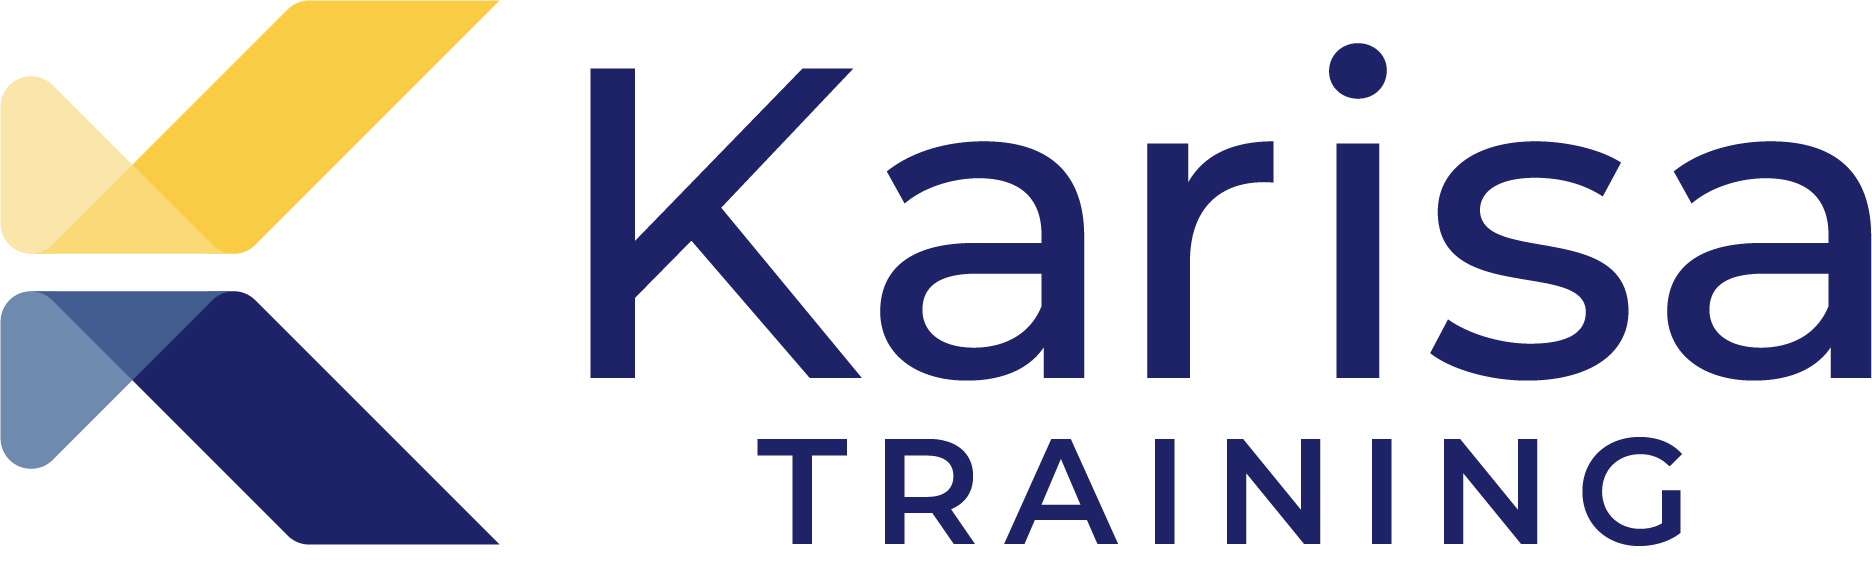 Karisa Training